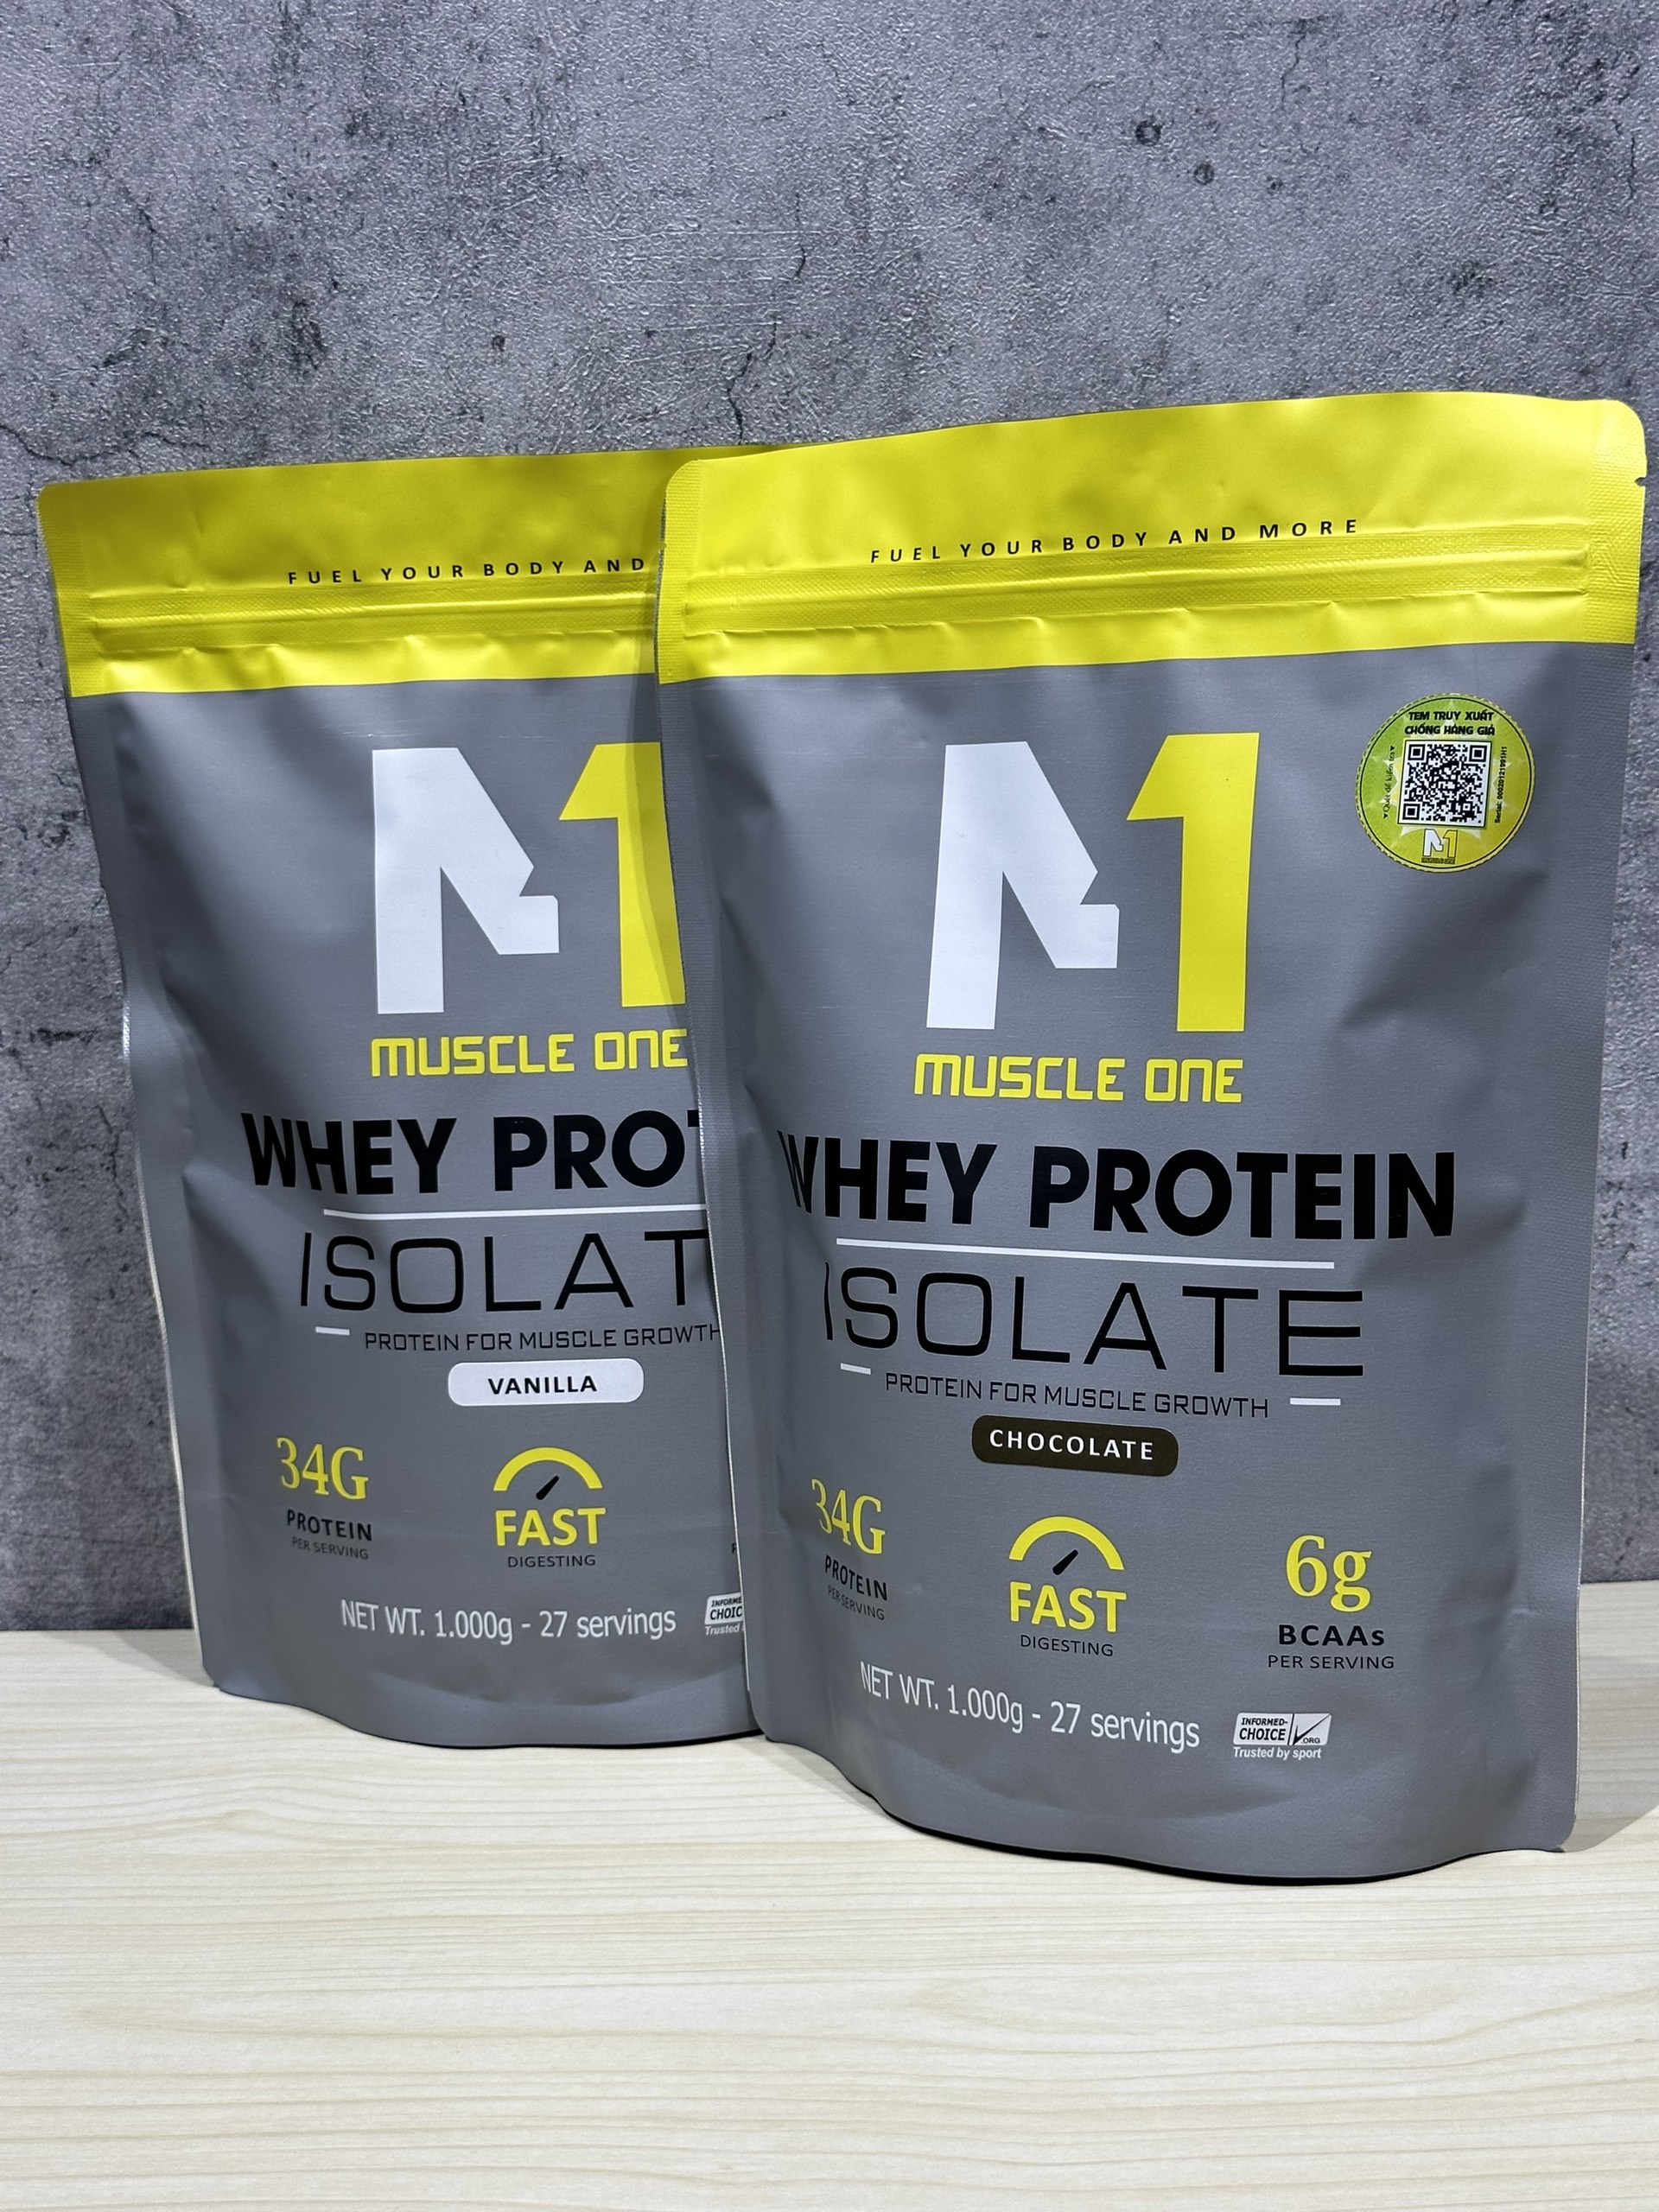 Sữa Tăng Cơ Whey Protein Isolate M1- Muscle One - Tăng cơ Hấp Thụ Nhanh 2kg (Combo 2 túi +...